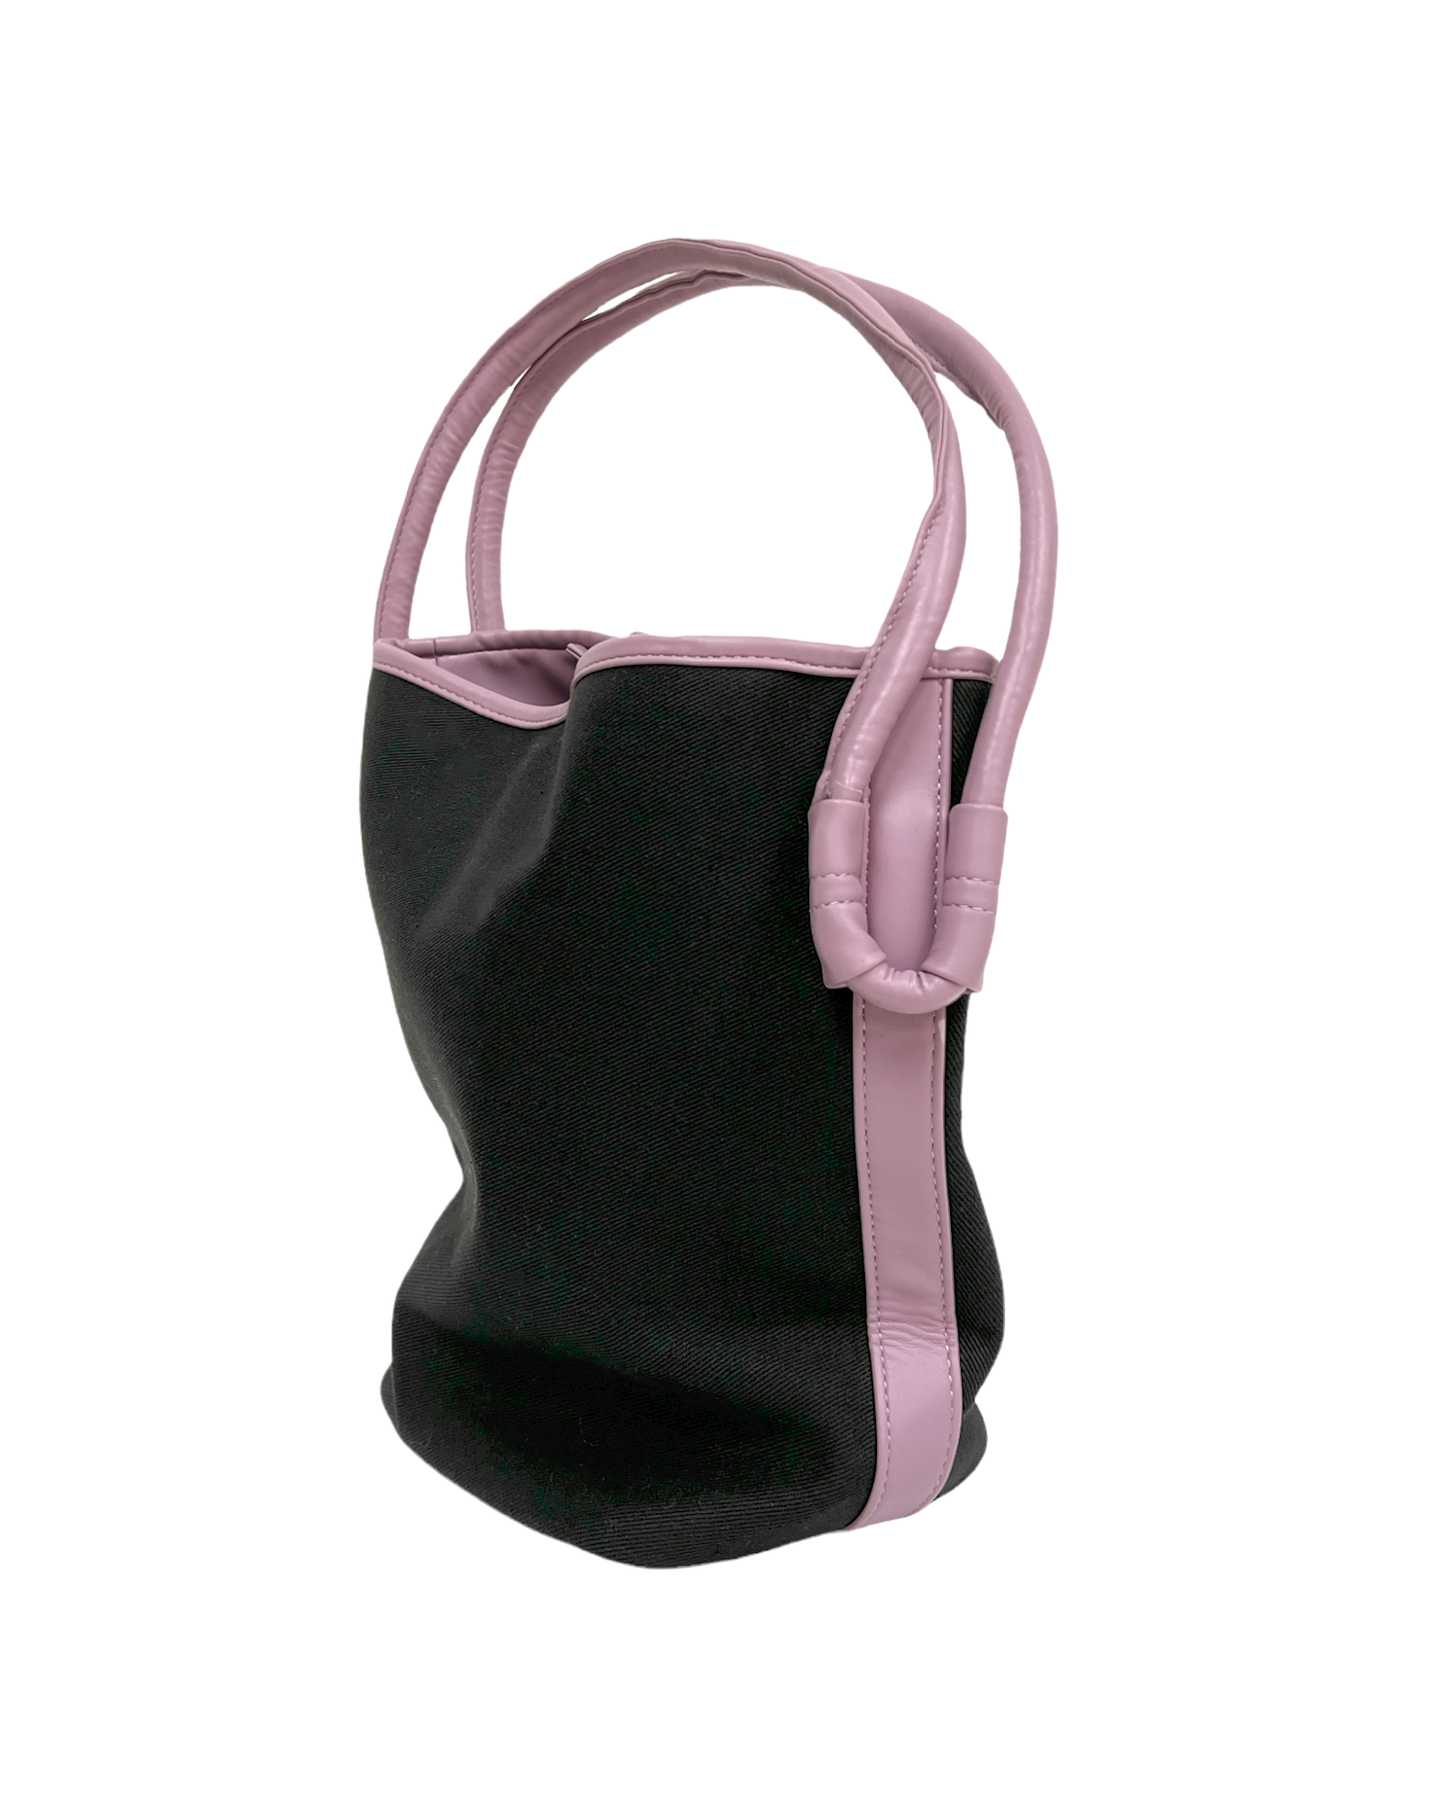 黑色帆布和淡紫色 PU 皮革肩帶水桶包 *預購*